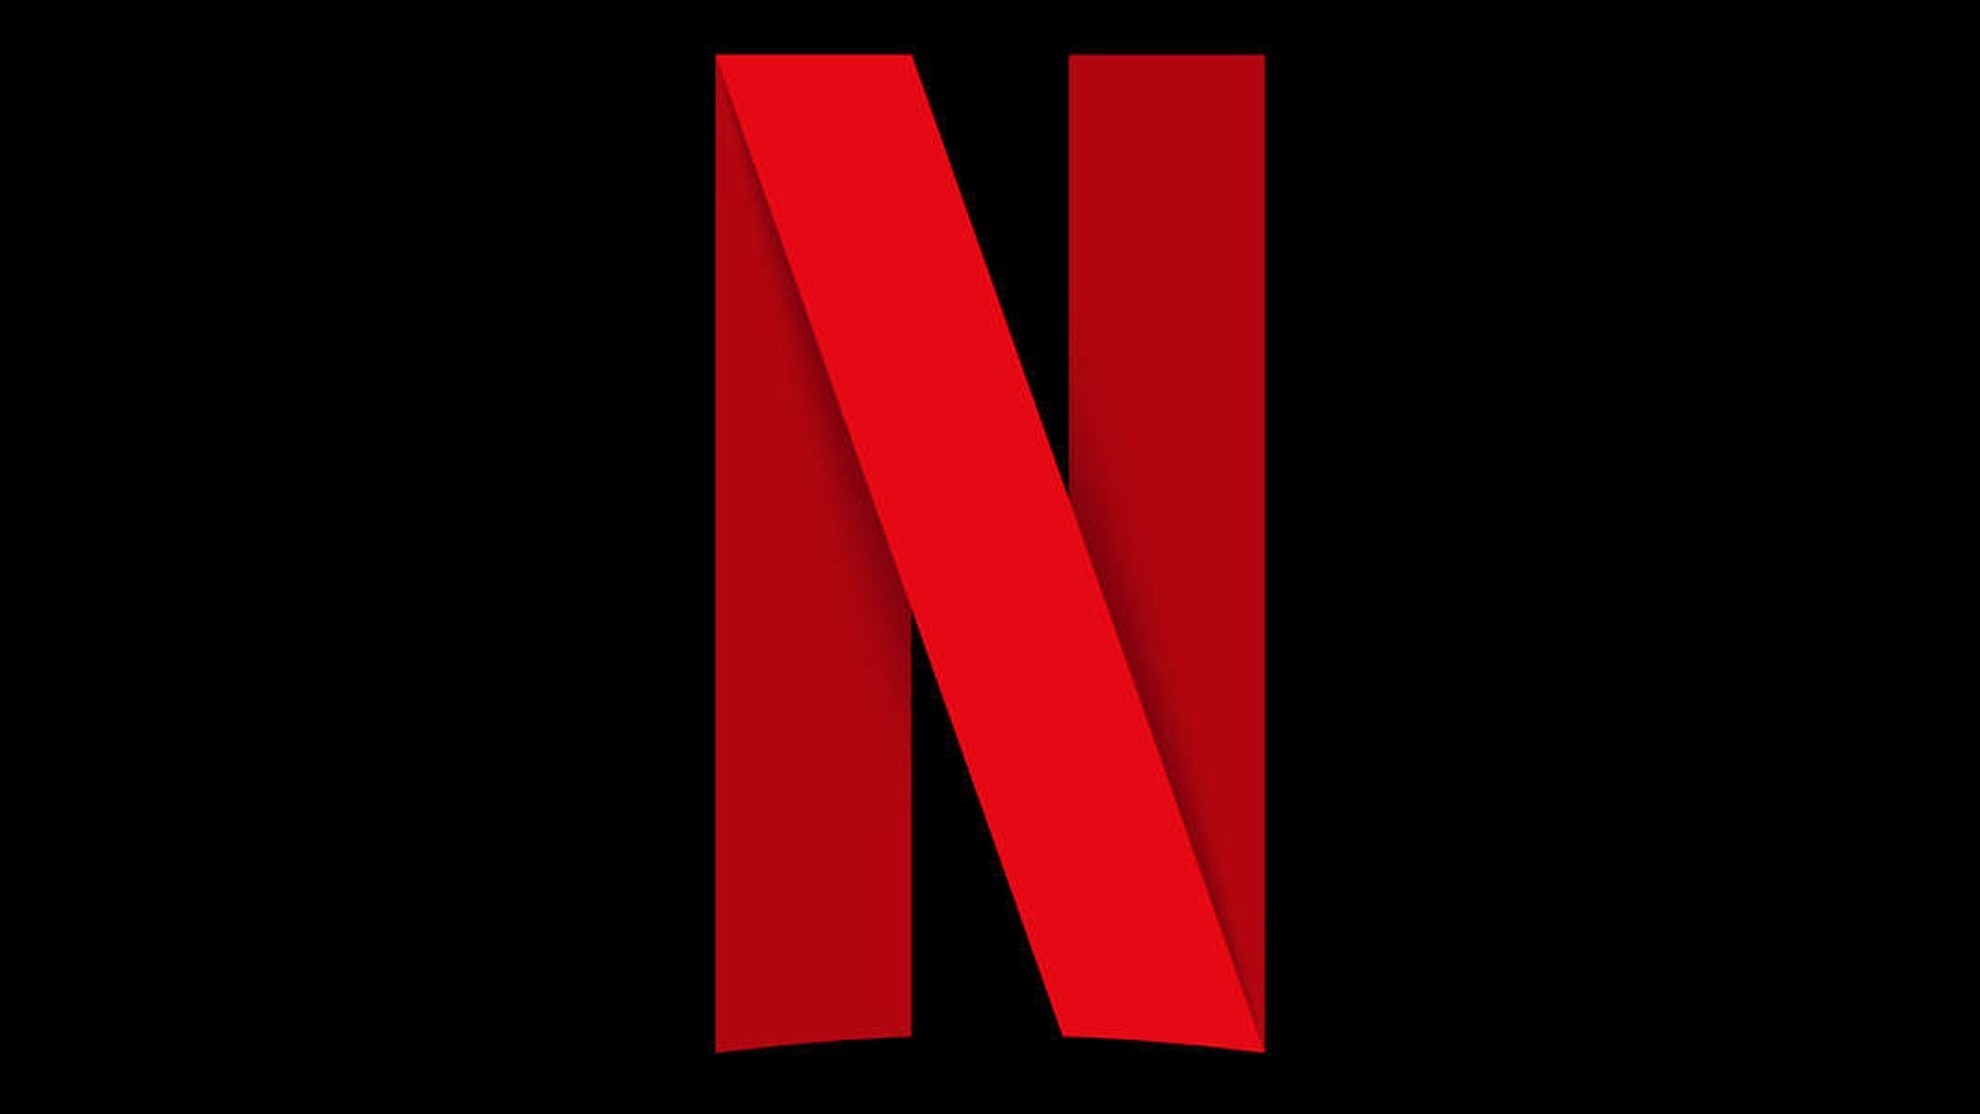 Cuánto cuesta al mes Netflix en Estados Unidos? Revisa todos los planes